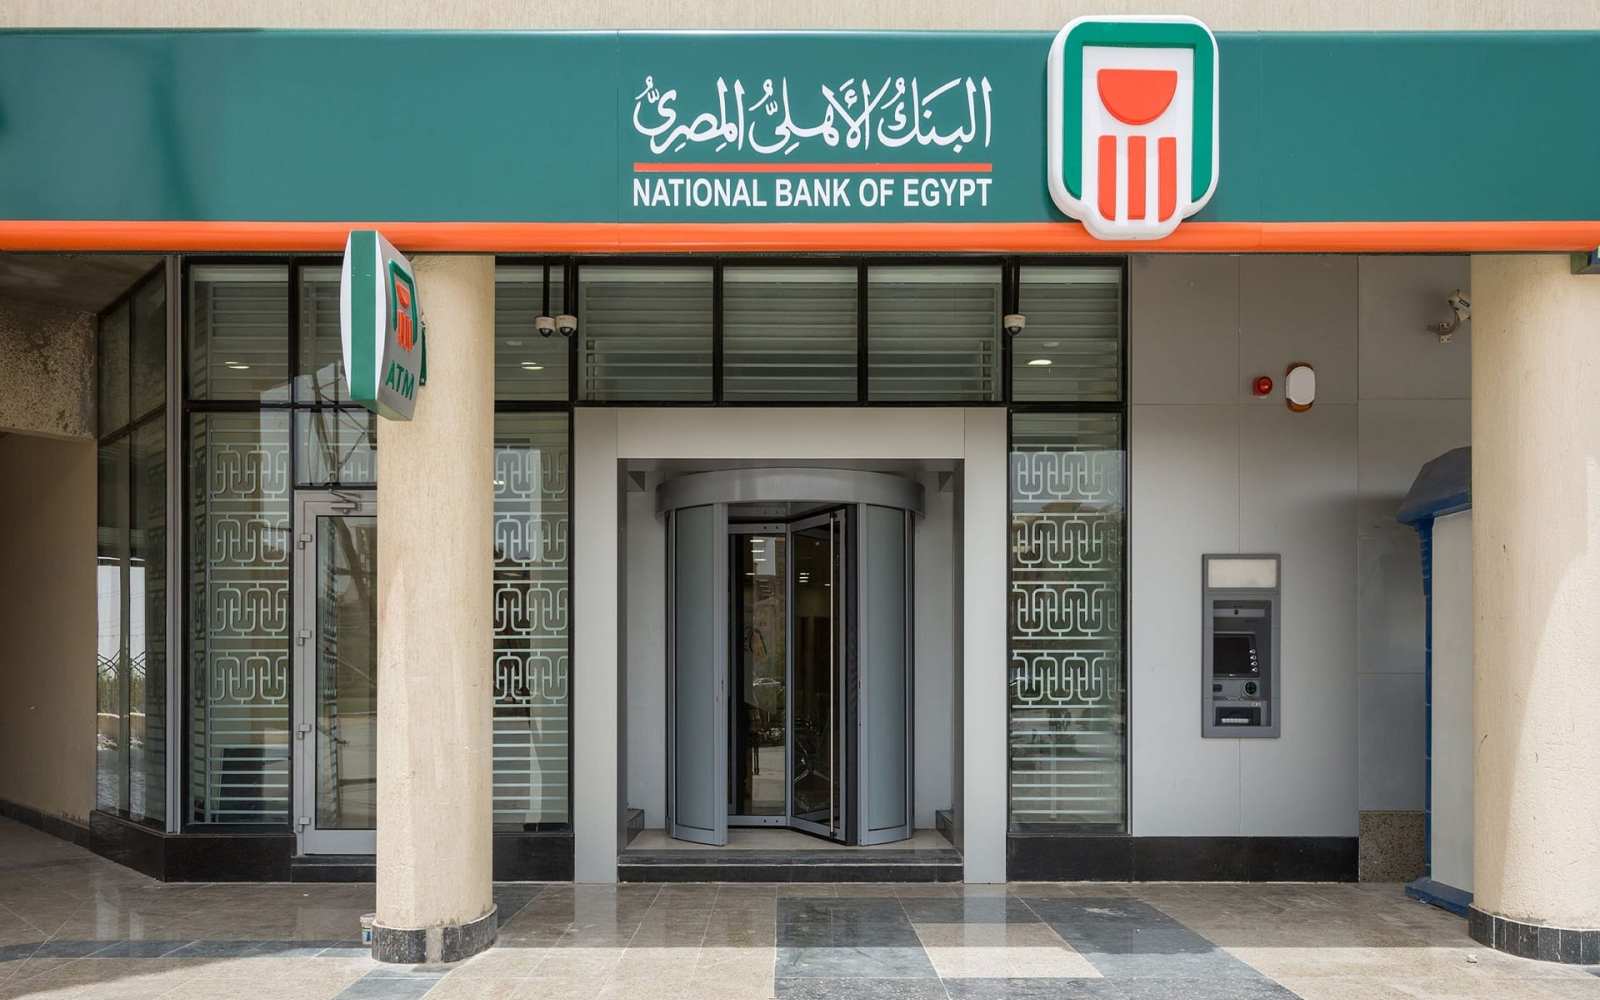 البنك الأهلي المصري يساند أطباء مصر بتلقى التبرعات علي حساب ١١١١١١ كما يساهم بمبلغ مماثل لإجمالي التبرعات